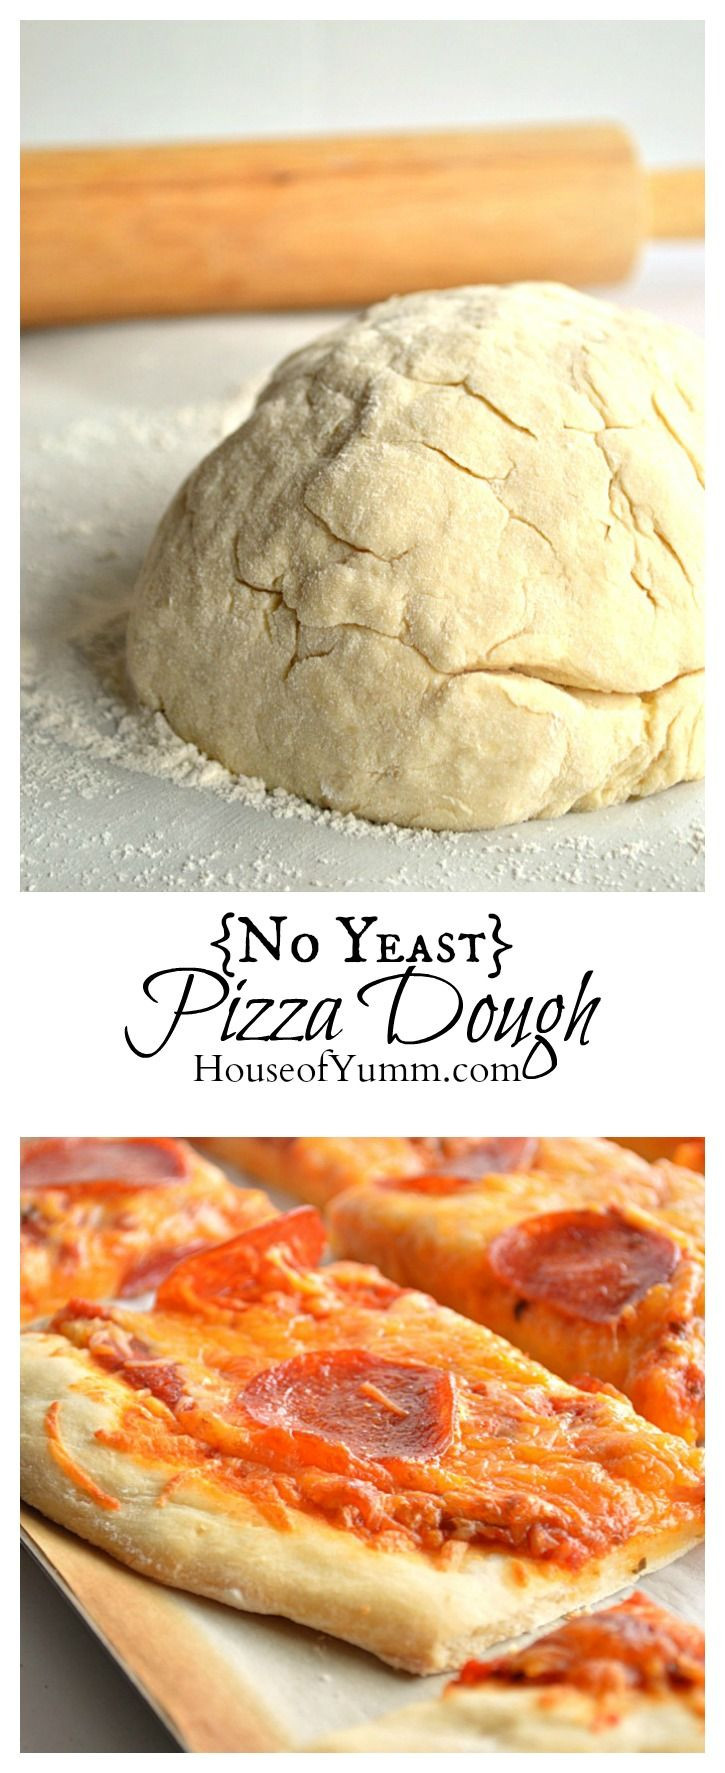 Easy Pizza Dough Recipe No Yeast
 No Yeast Pizza Dough Recipe